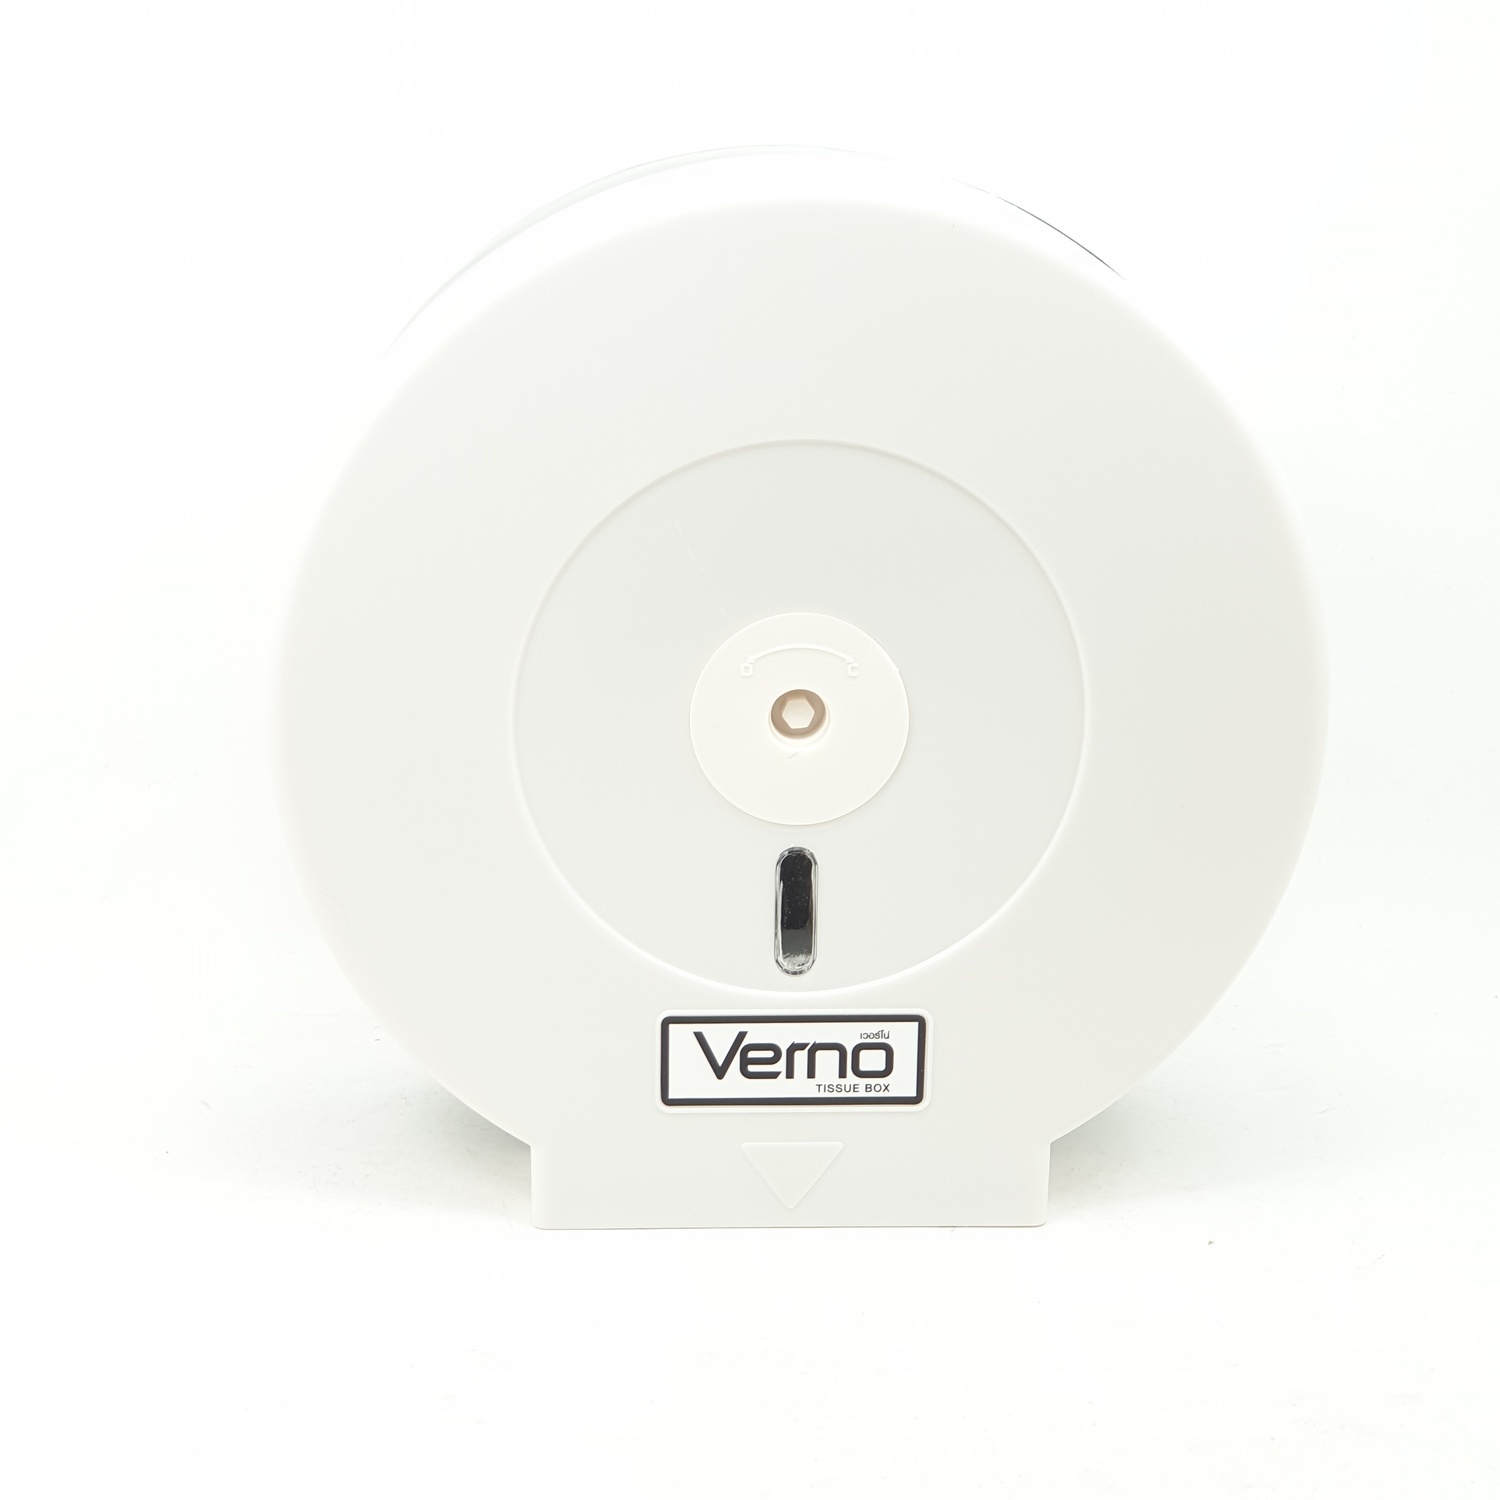 Verno กล่องใส่กระดาษชำระจัมโบ้โรล รุ่น PQS-OB8001A สีขาว